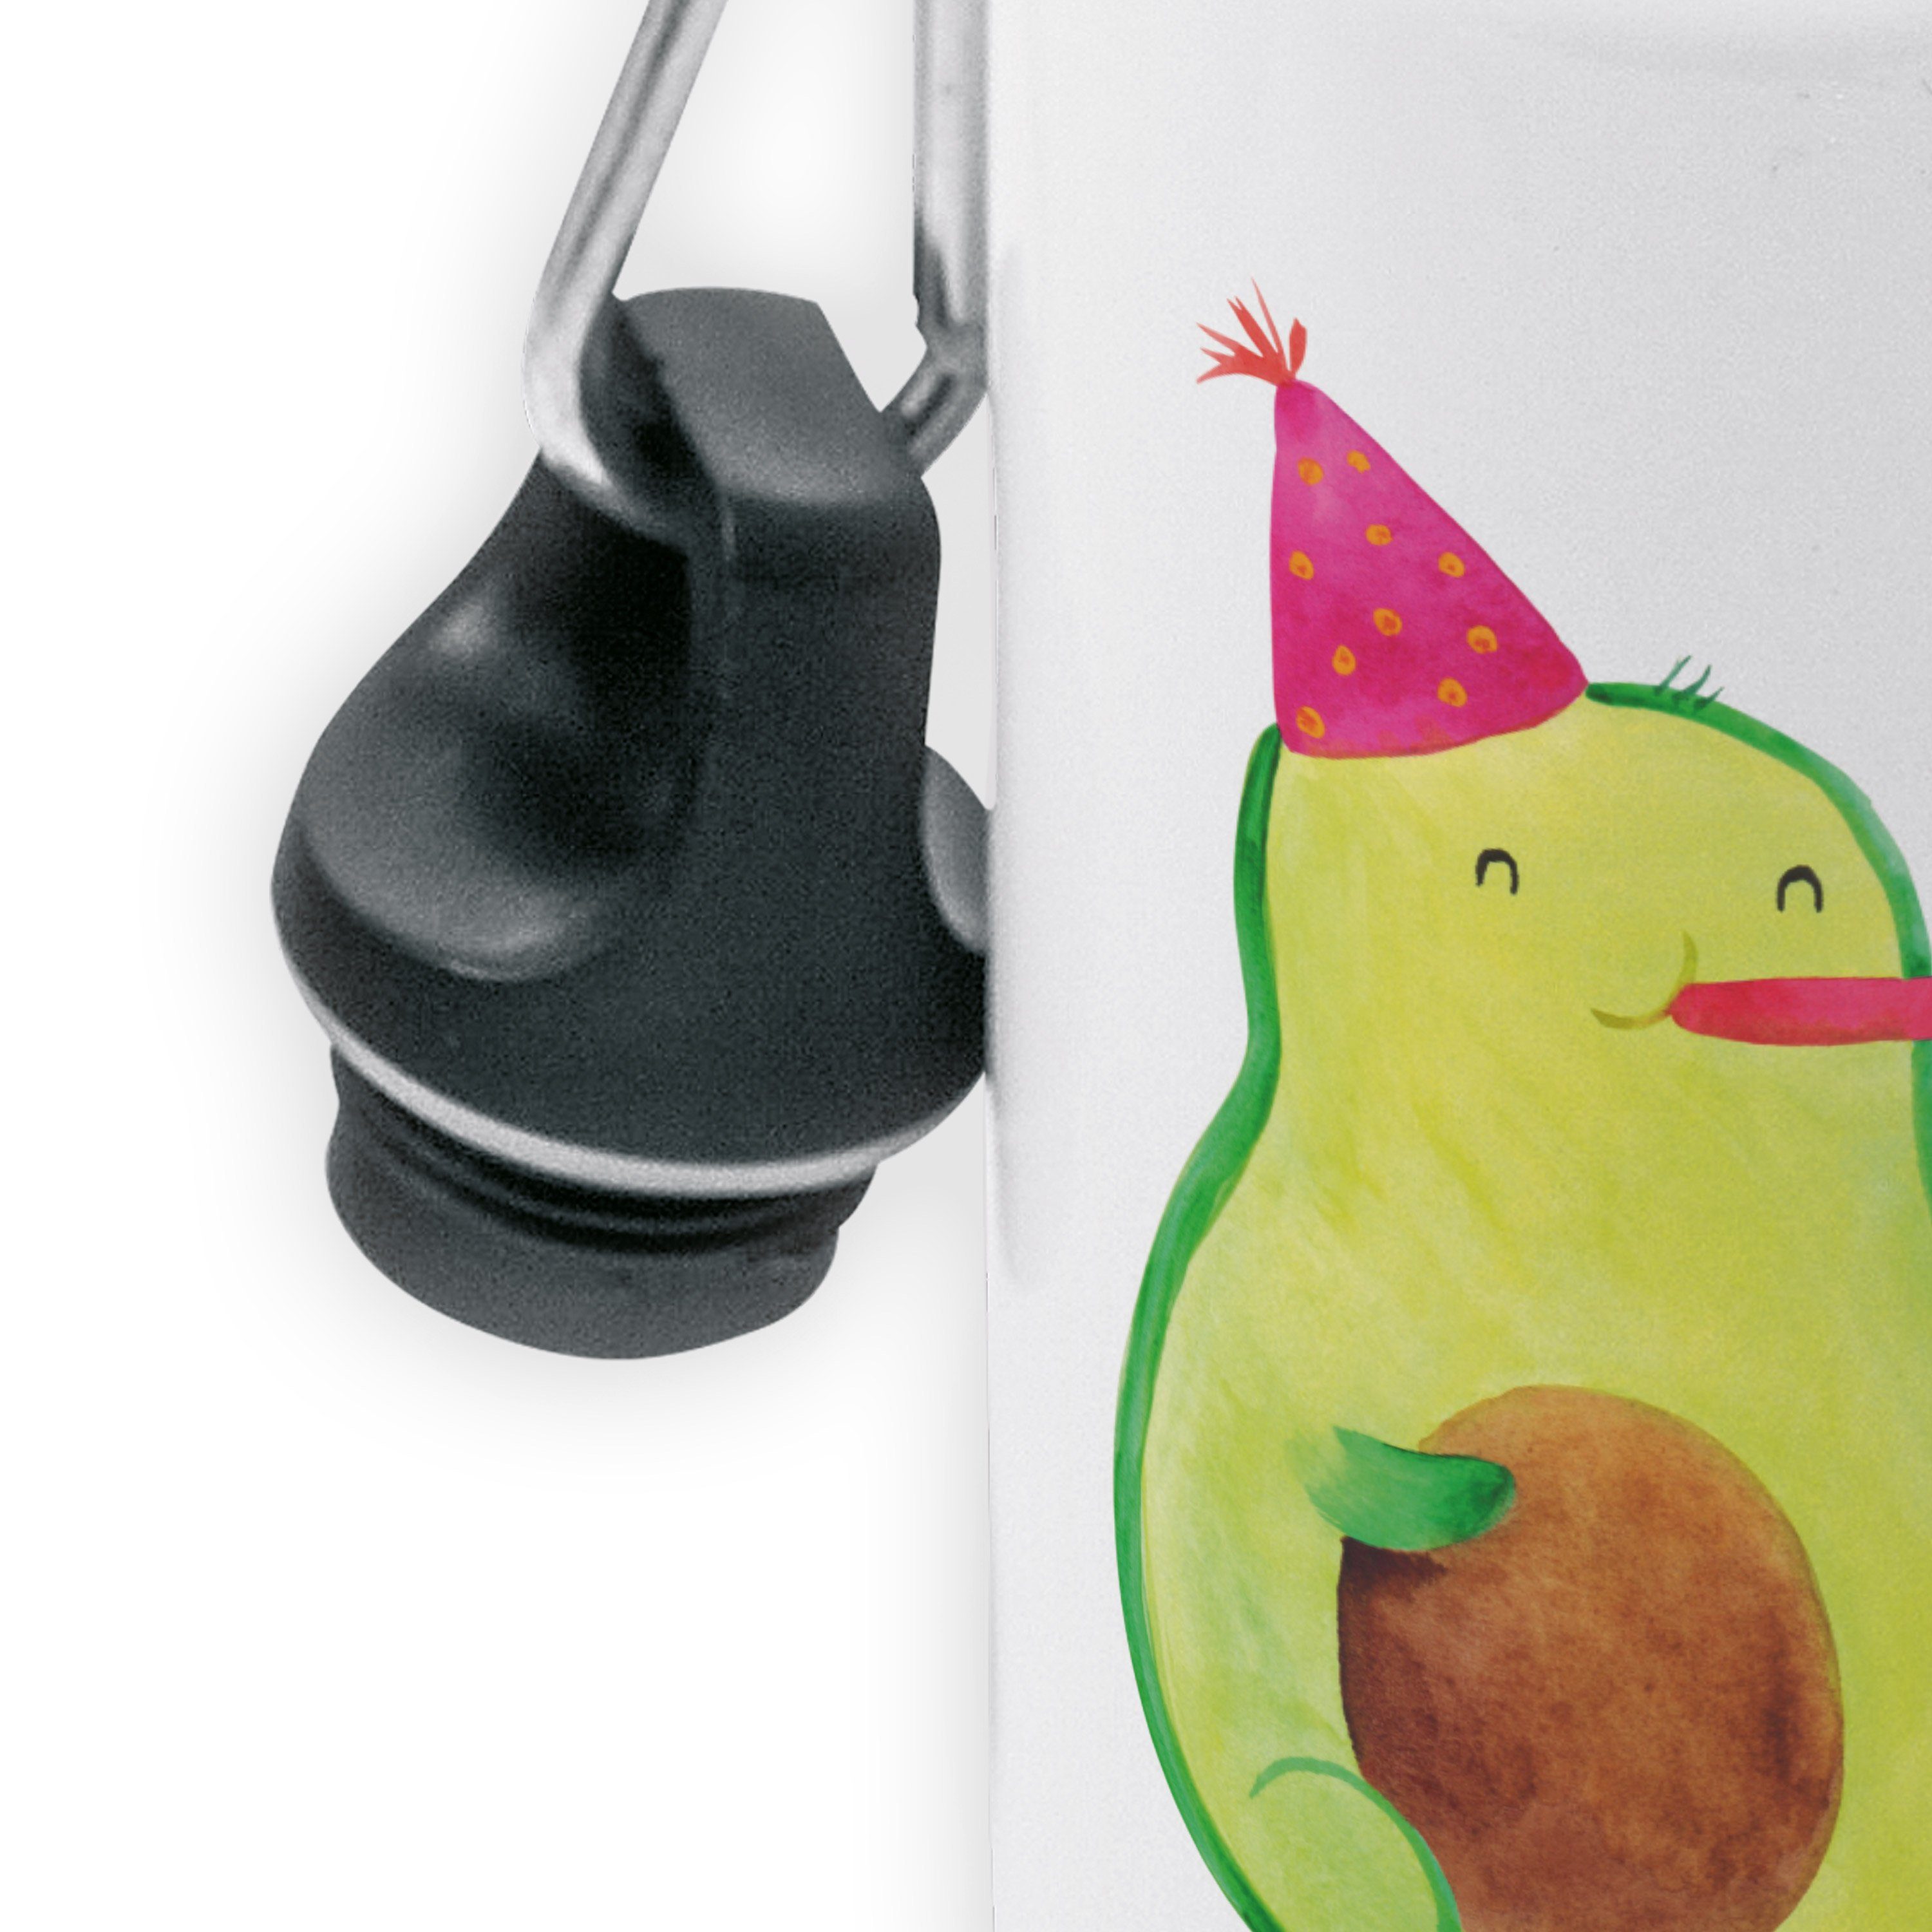 Mr. & Mrs. Überraschung, Weiß Avocado Panda Ki Trinkflasche - - Kinder, Flasche, Birthday Geschenk